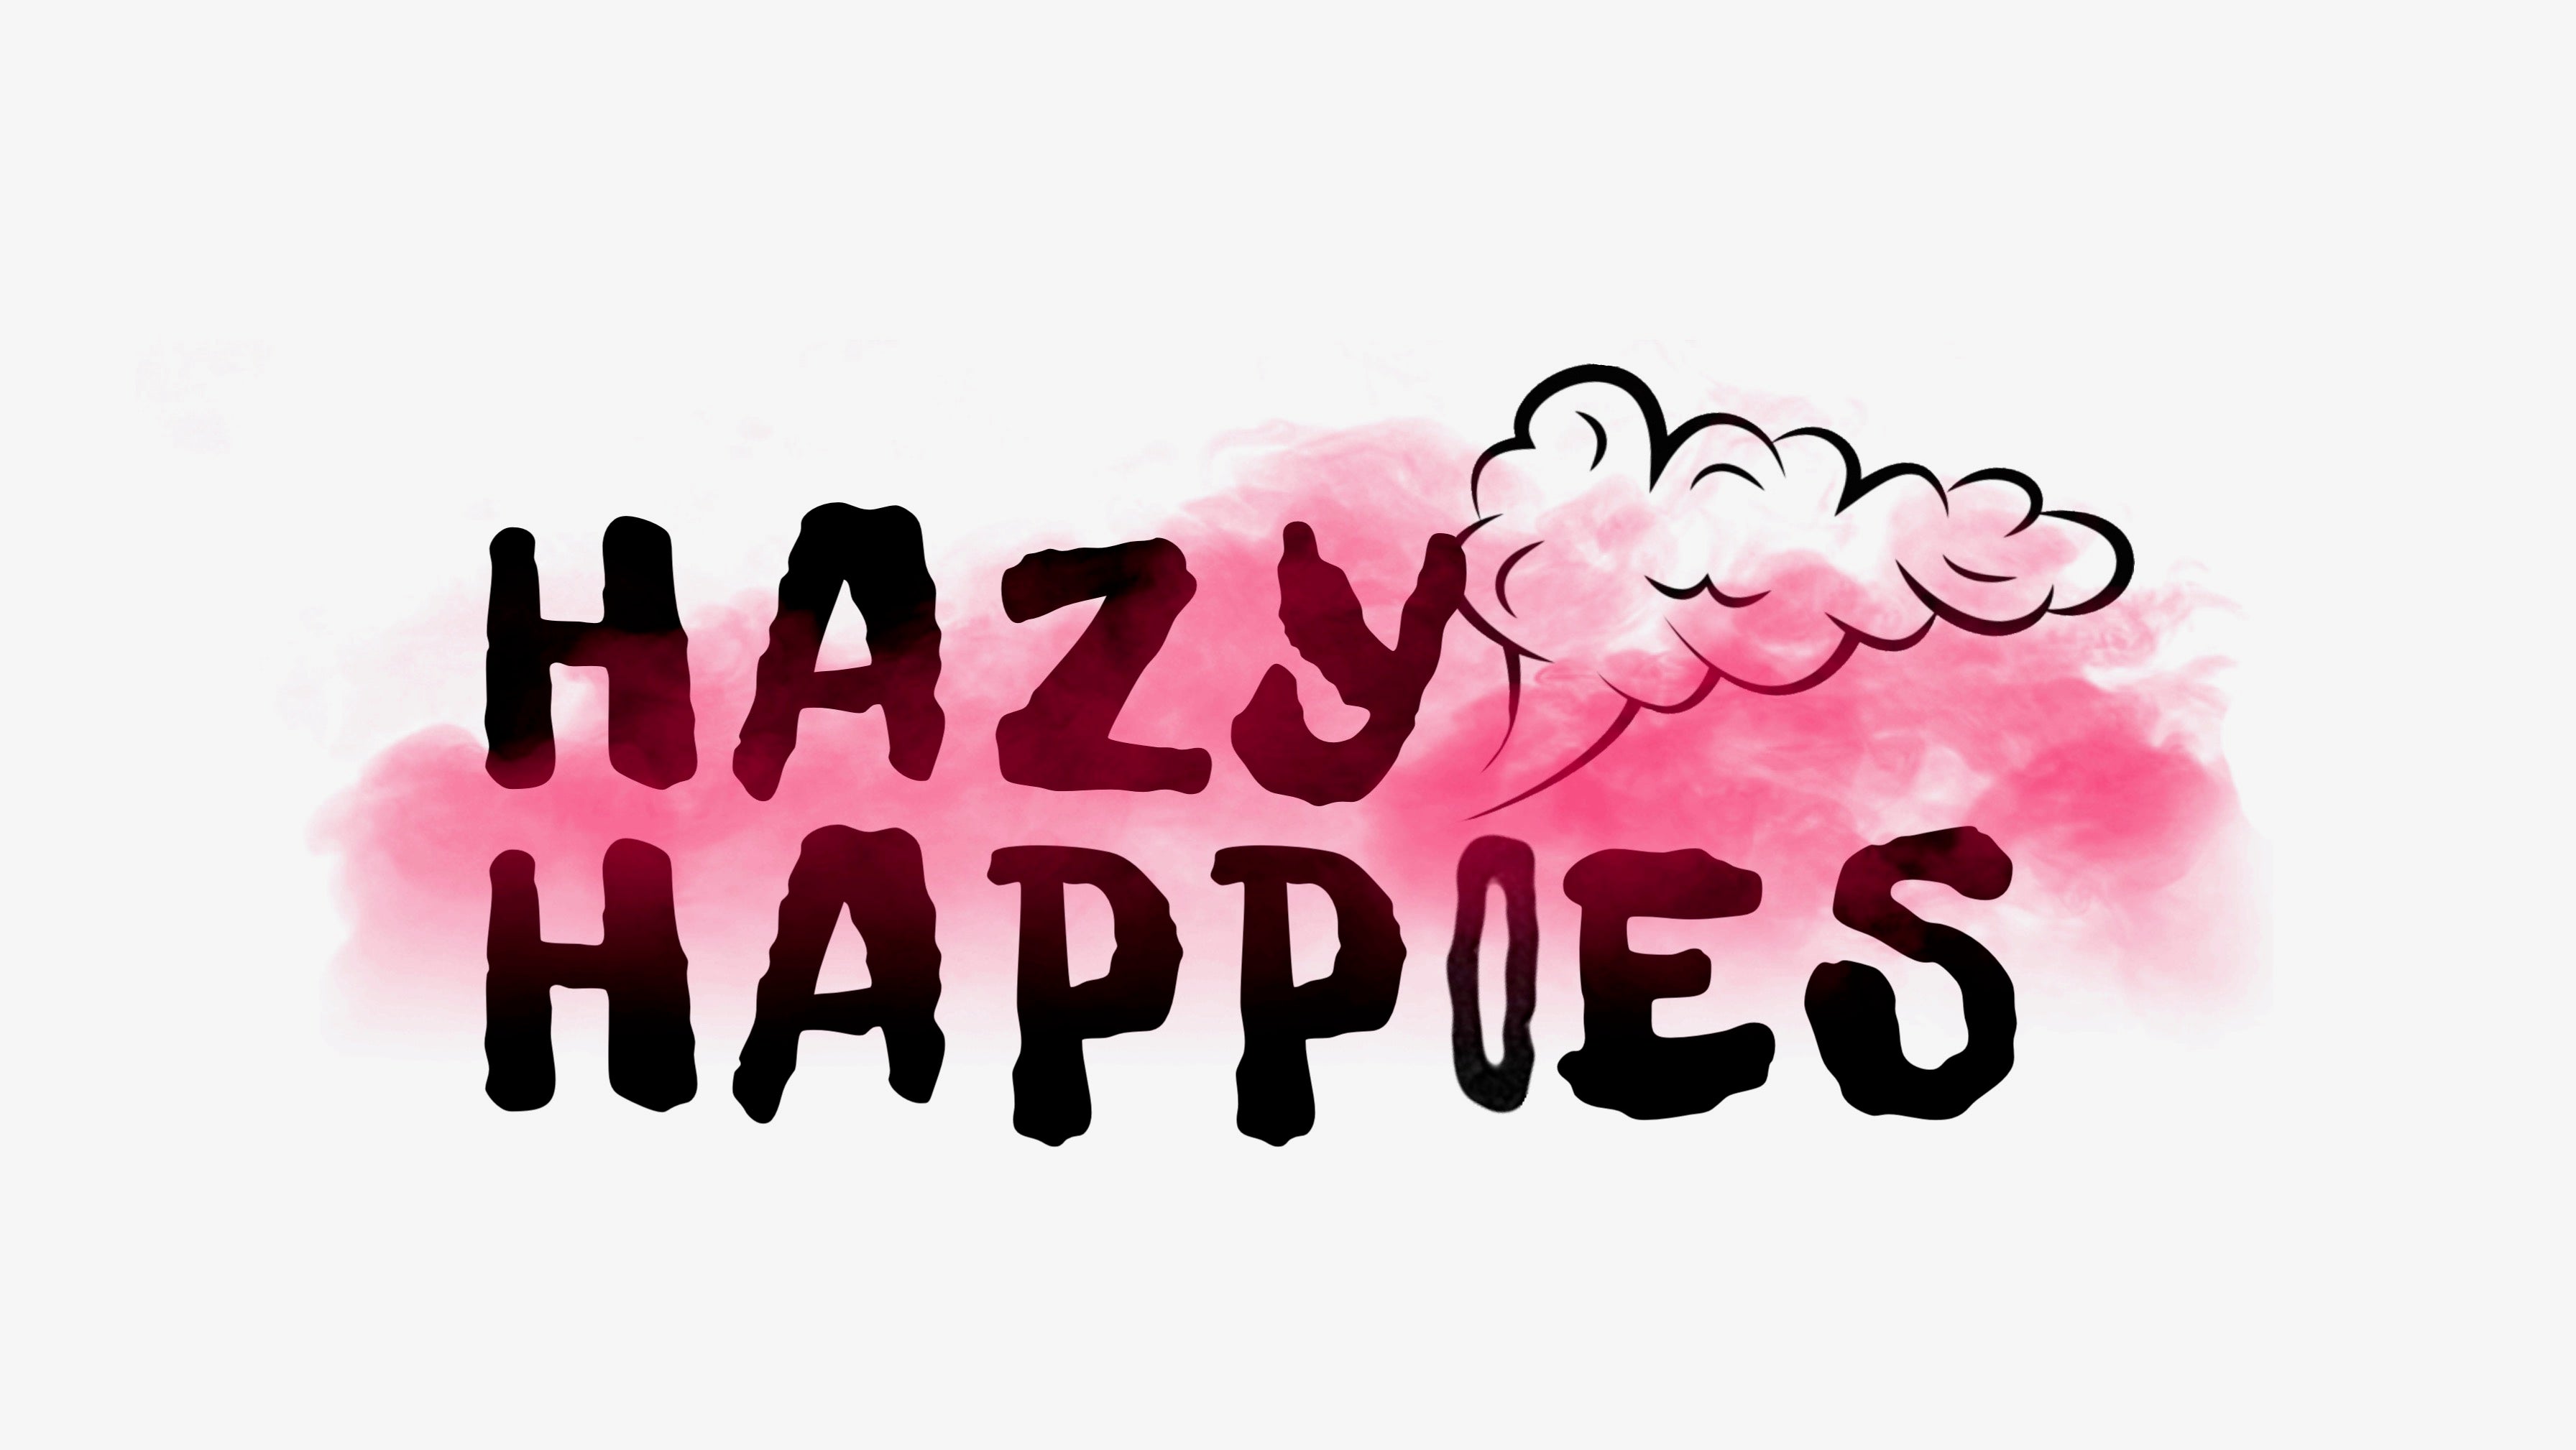 Hazy Happies